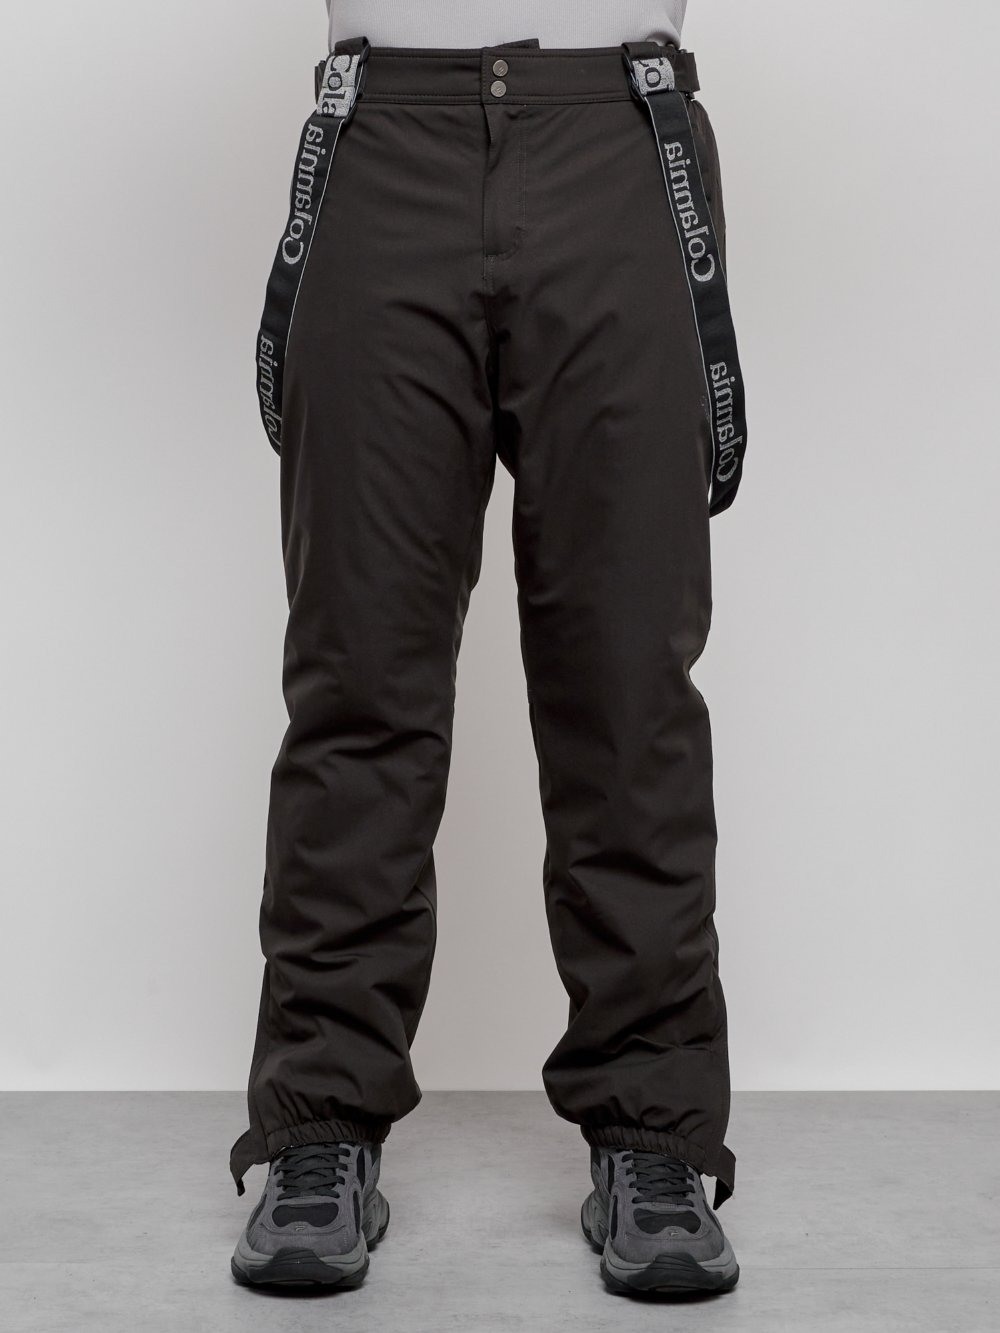 Полукомбинезон утепленный мужской зимний горнолыжный темно-серого цвета 7504TC